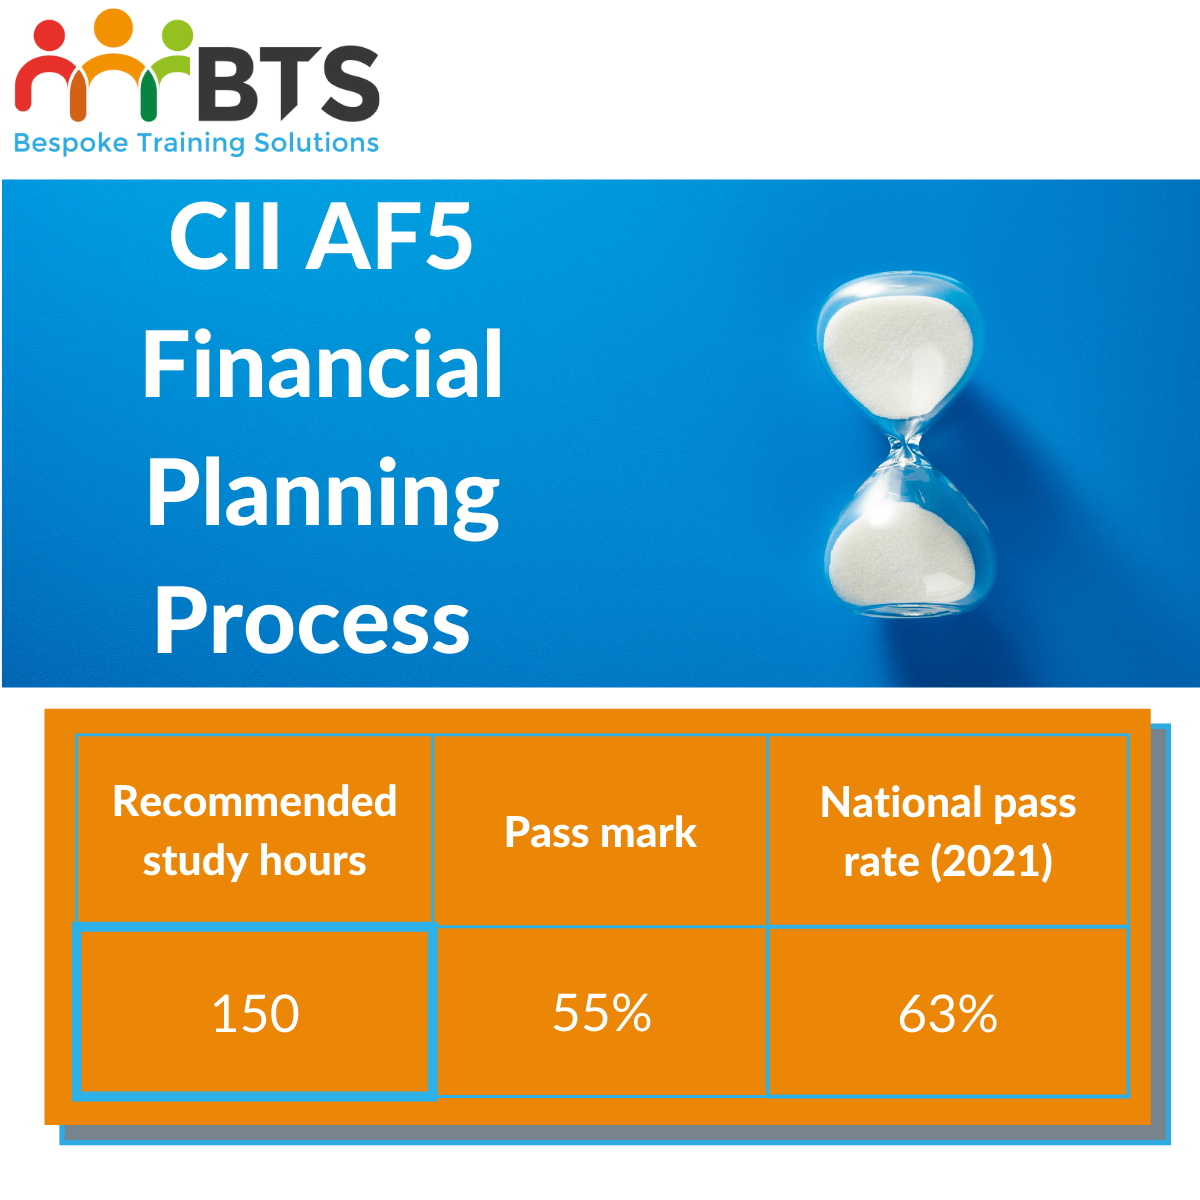 AF5 financial planning process